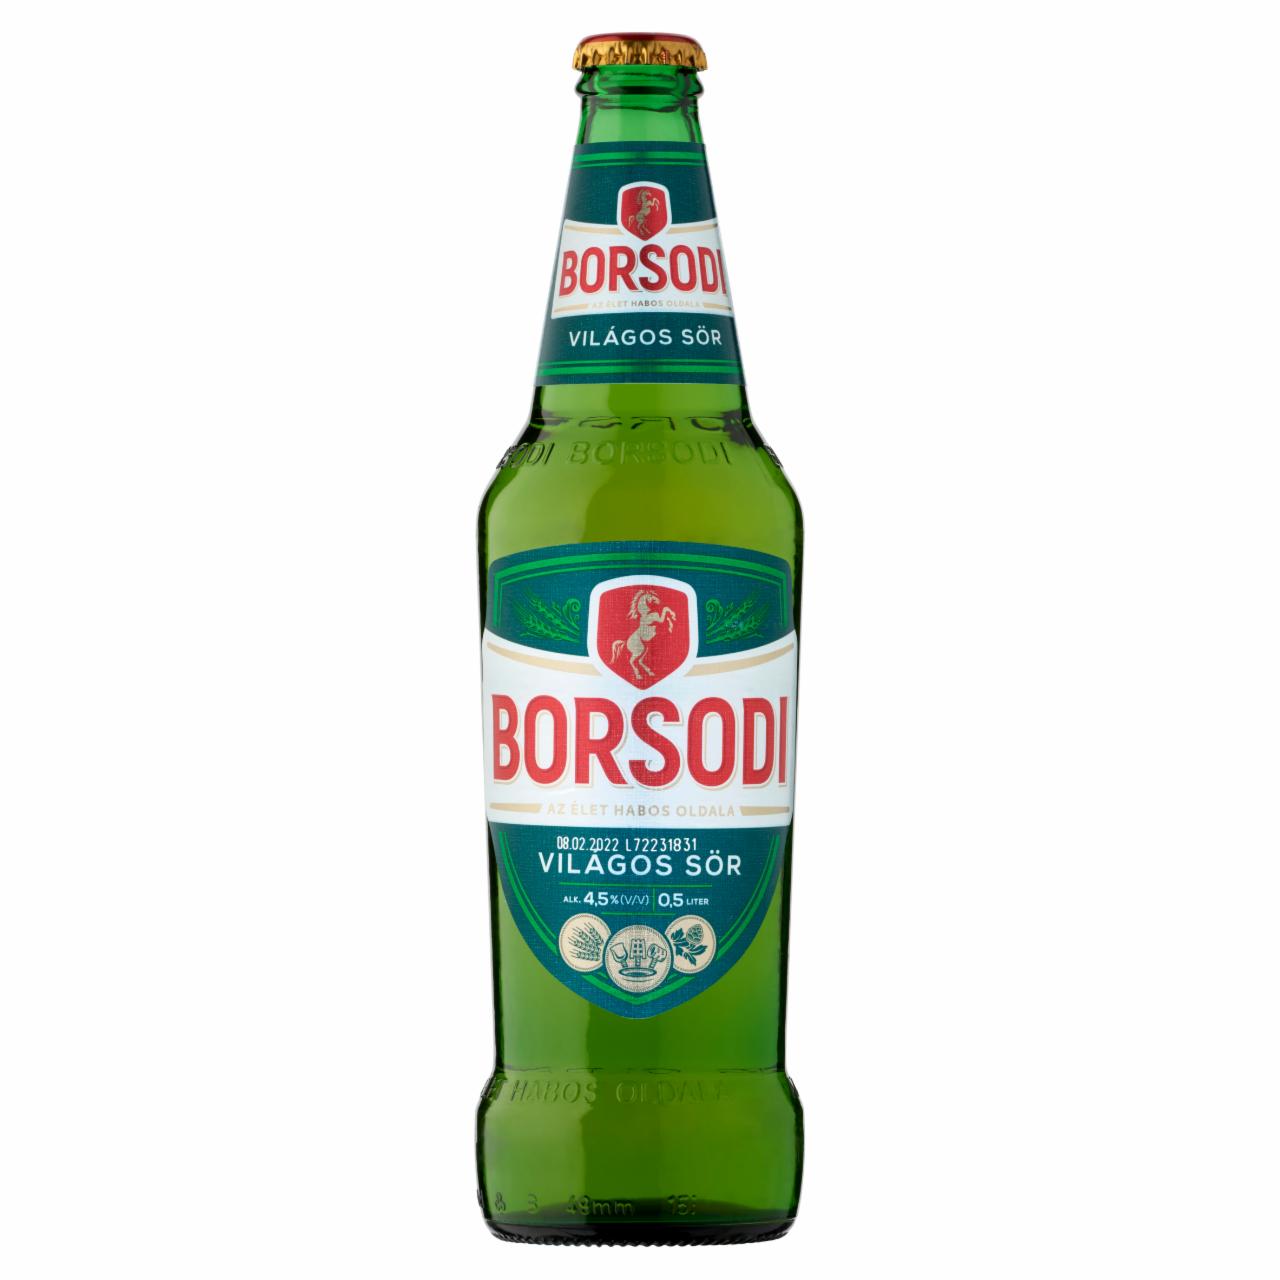 Képek - Borsodi világos sör 4,5% 0,5 l